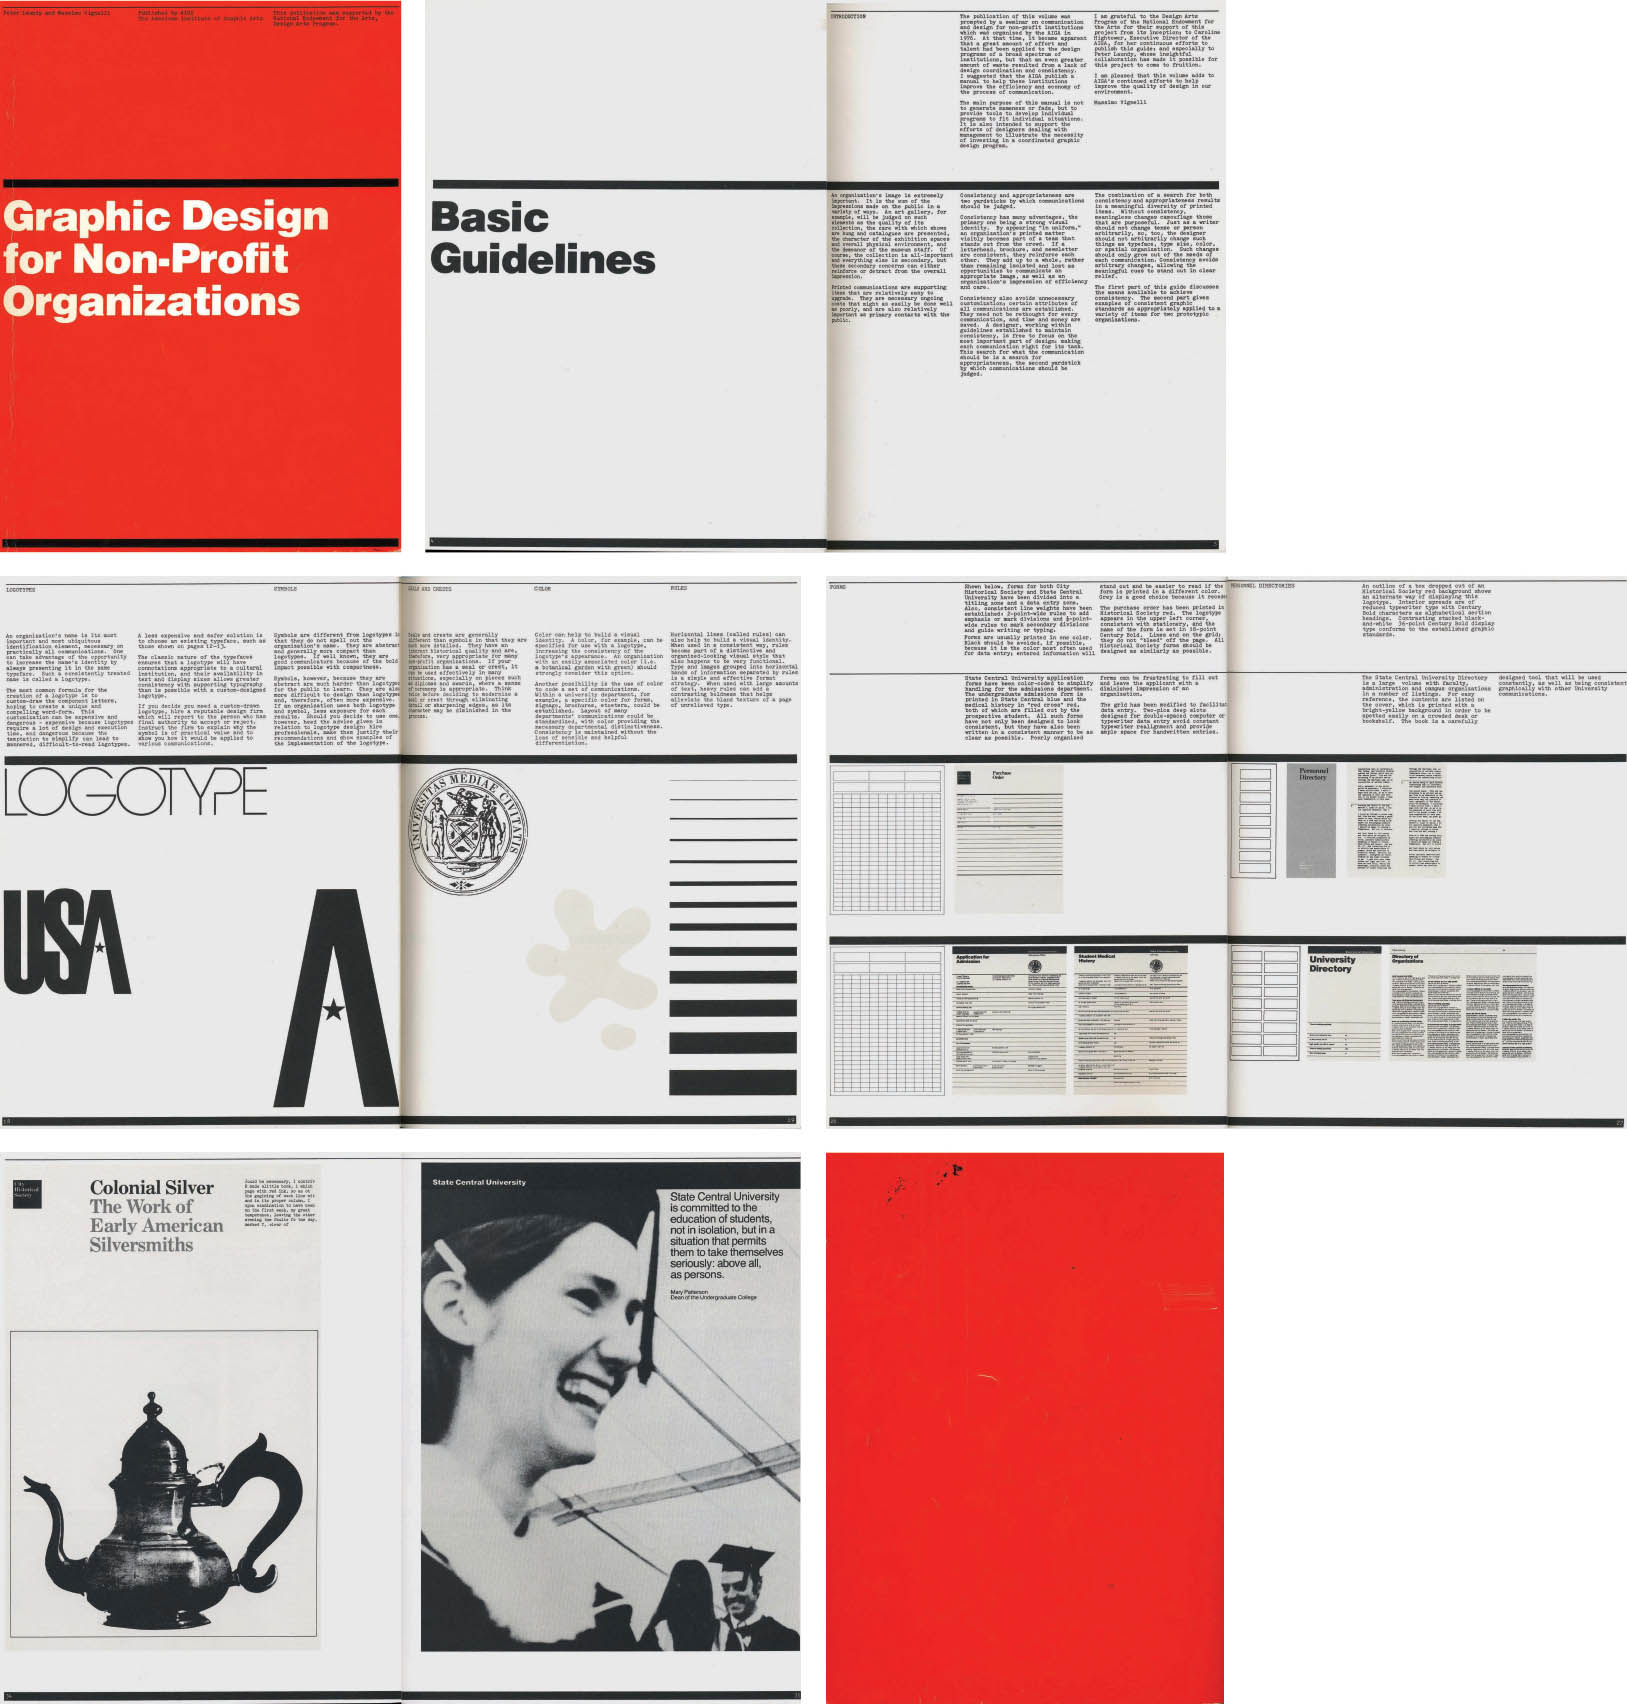 Libro de diseño gráfico gratuito en pdf - graphic design for non-profit organizations